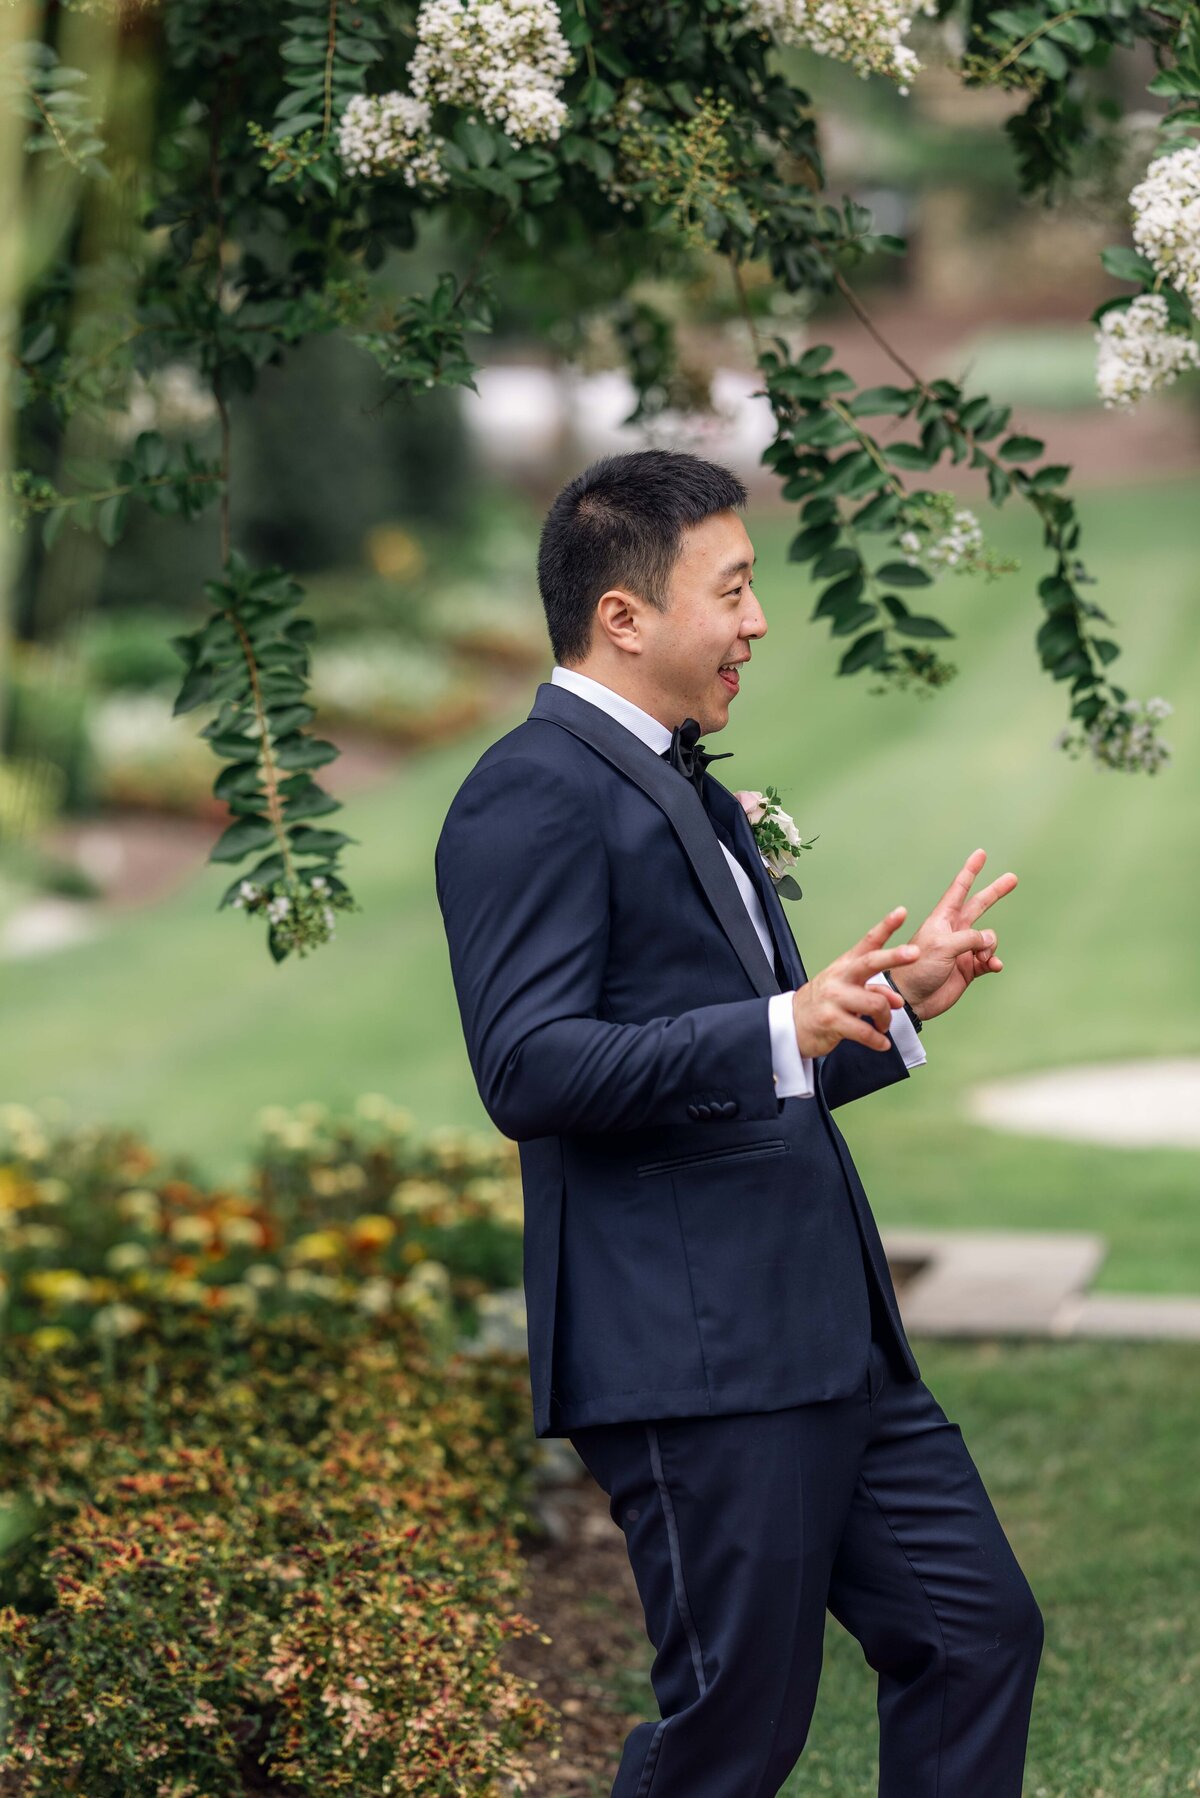 belmont-manor-wedding-baltimore-wedding-photographer-bailey-weddings-asian-american-wedding-karenadixon-2022-218